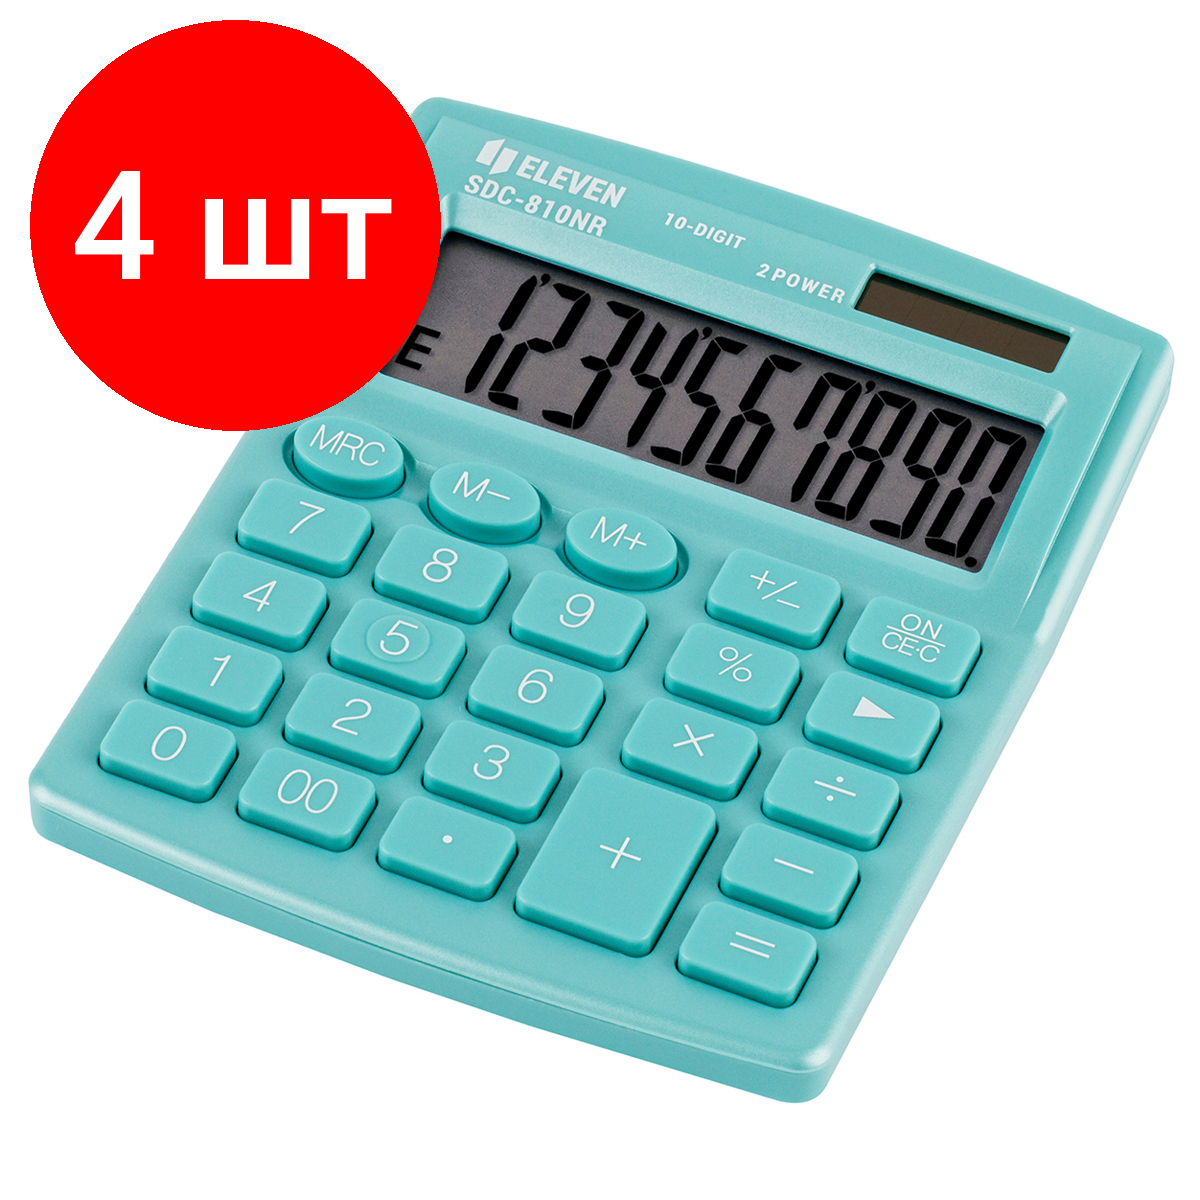 Комплект 4 шт, Калькулятор настольный Eleven SDC-810NR-GN, 10 разрядов, двойное питание, 127*105*21мм, бирюзовый